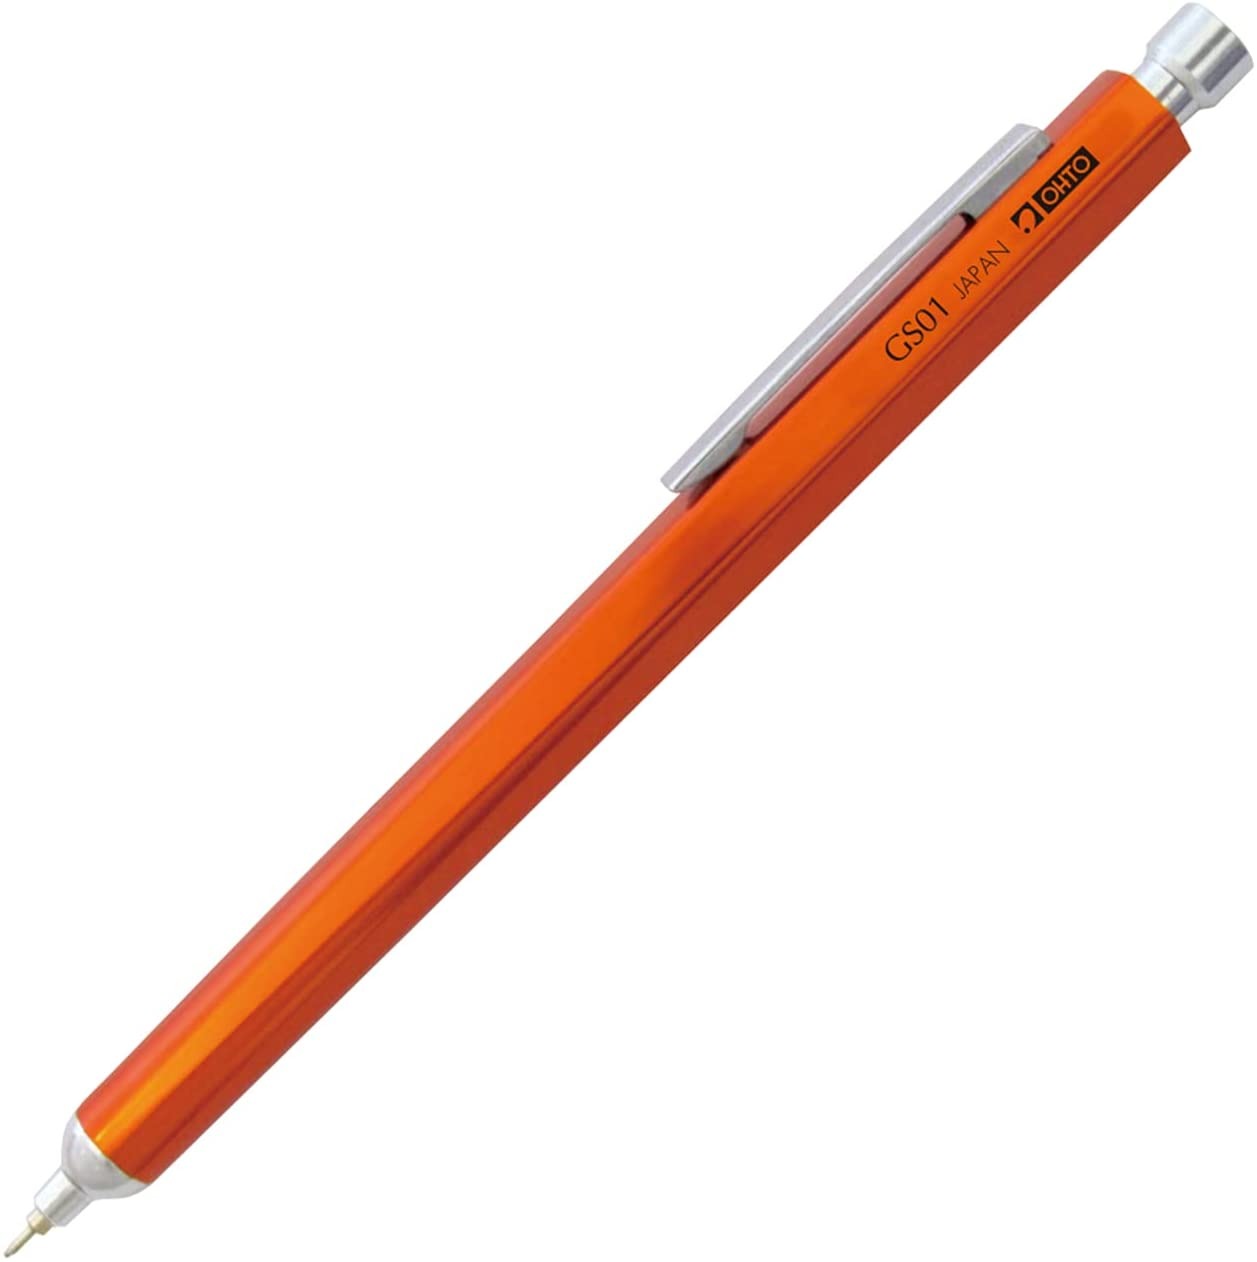 Horizon GS01 Ballpoint Pen